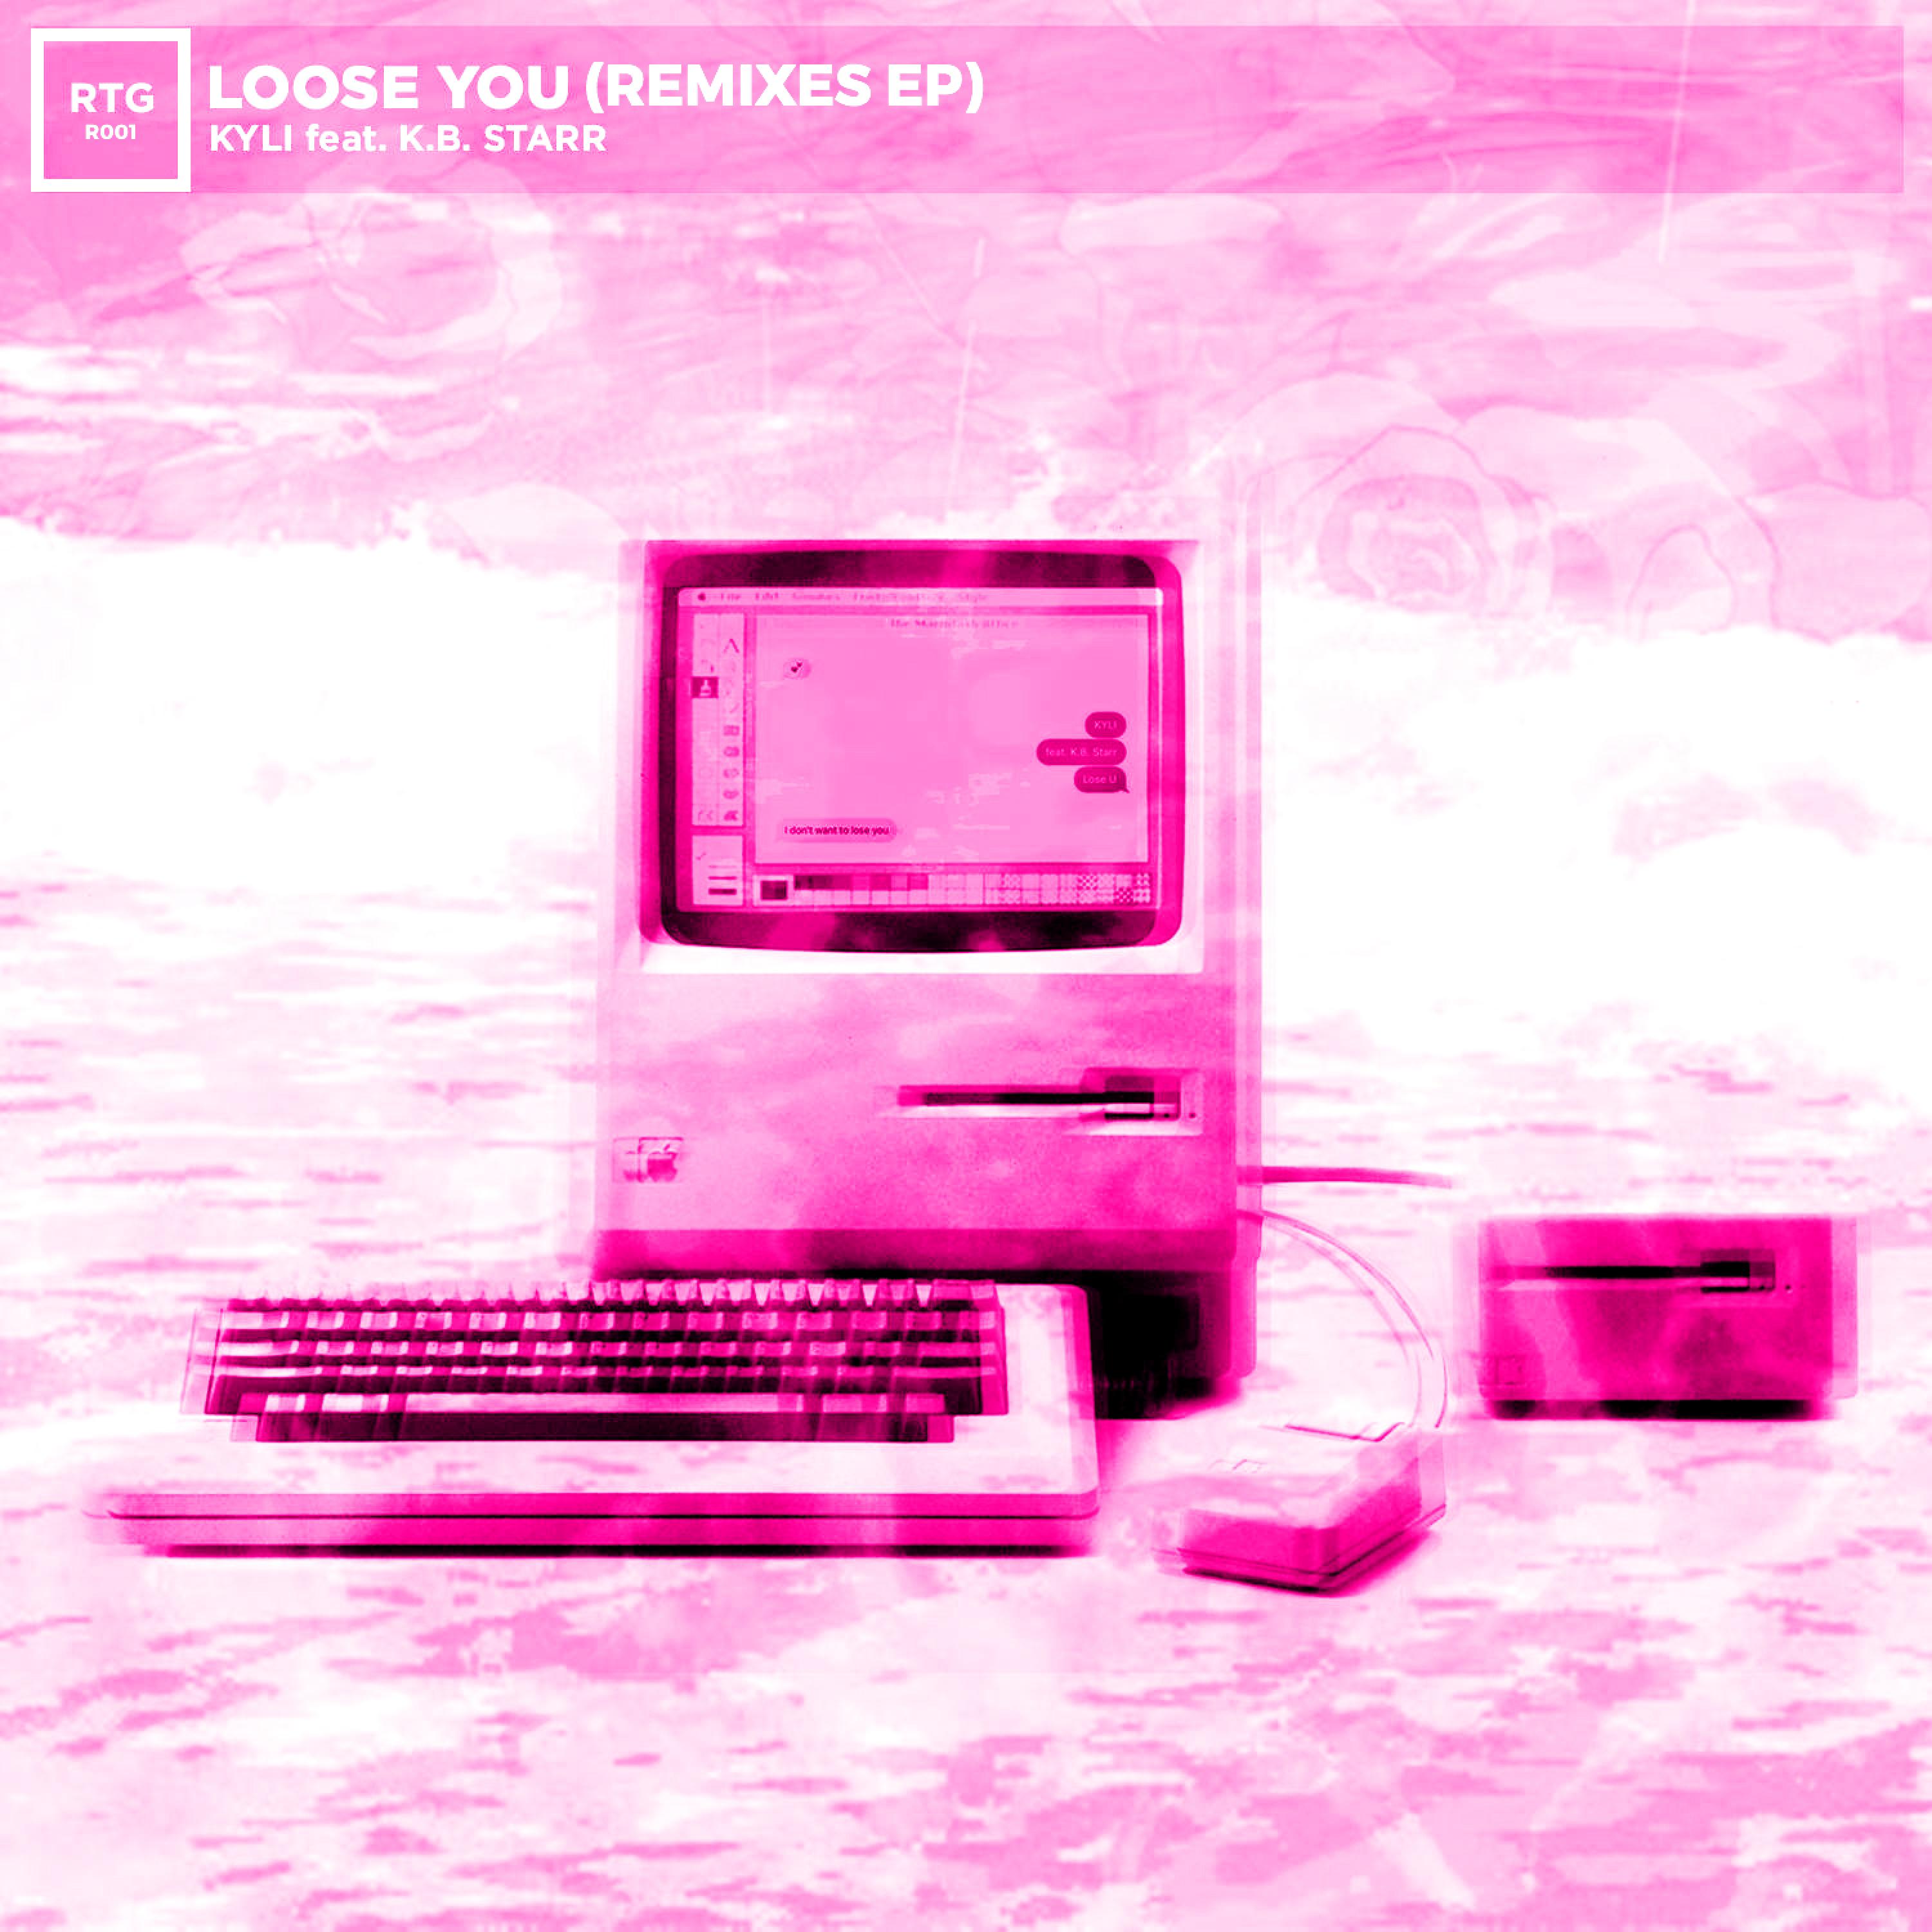 Loose You (Remixes EP)